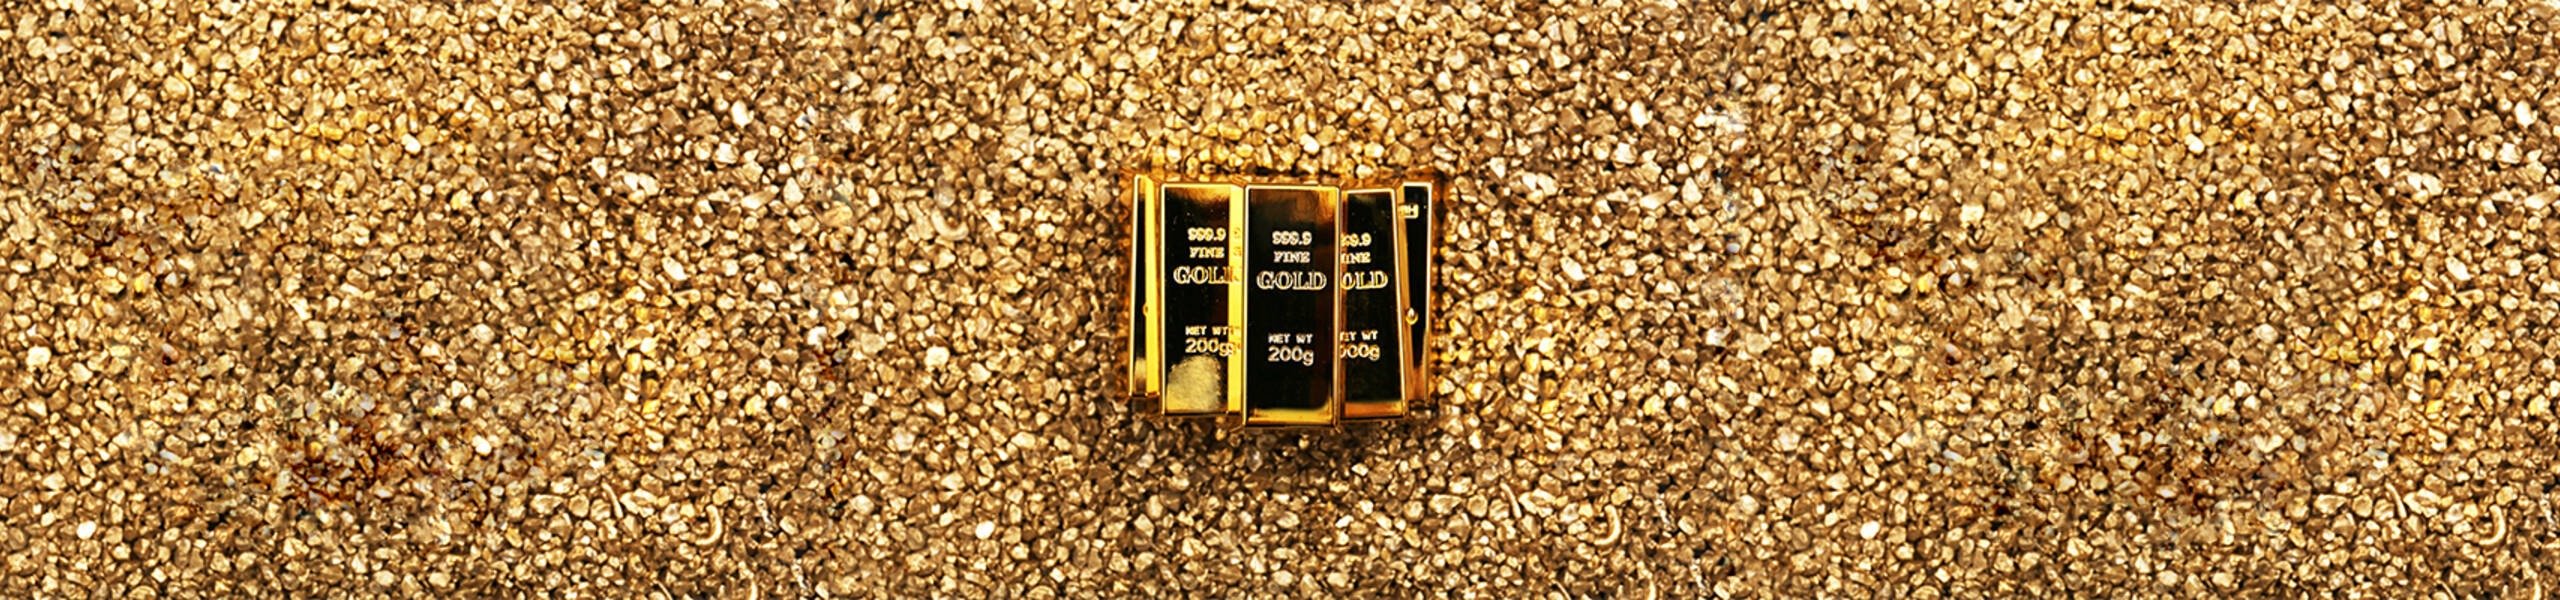 GOLD - Força compradora em todos timeframes